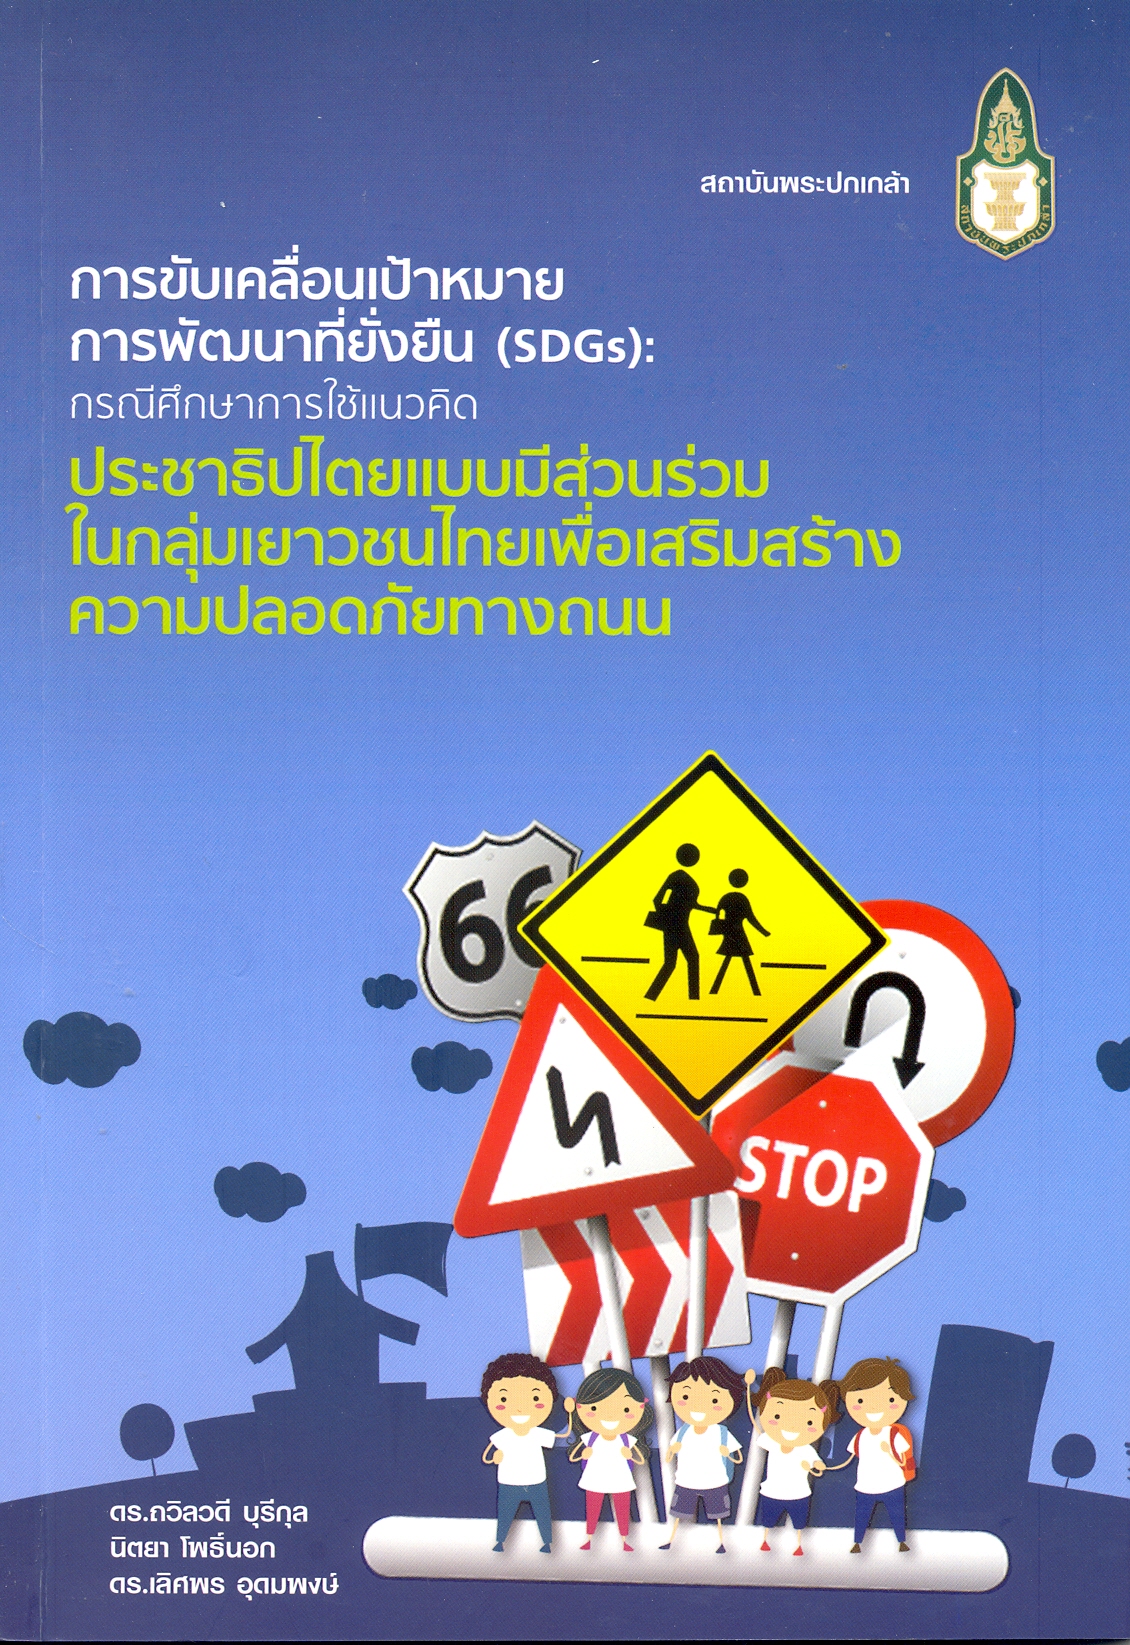 การขับเคลื่อนเป้าหมายการพัฒนาที่ยั่งยืน (SDGs) : กรณีศึกษาการใช้แนวคิดประชาธิปไตยแบบมีส่วนร่วมในกลุ่มเยาวชนไทยเพื่อเสริมสร้างความปลอดภัยทางถนน